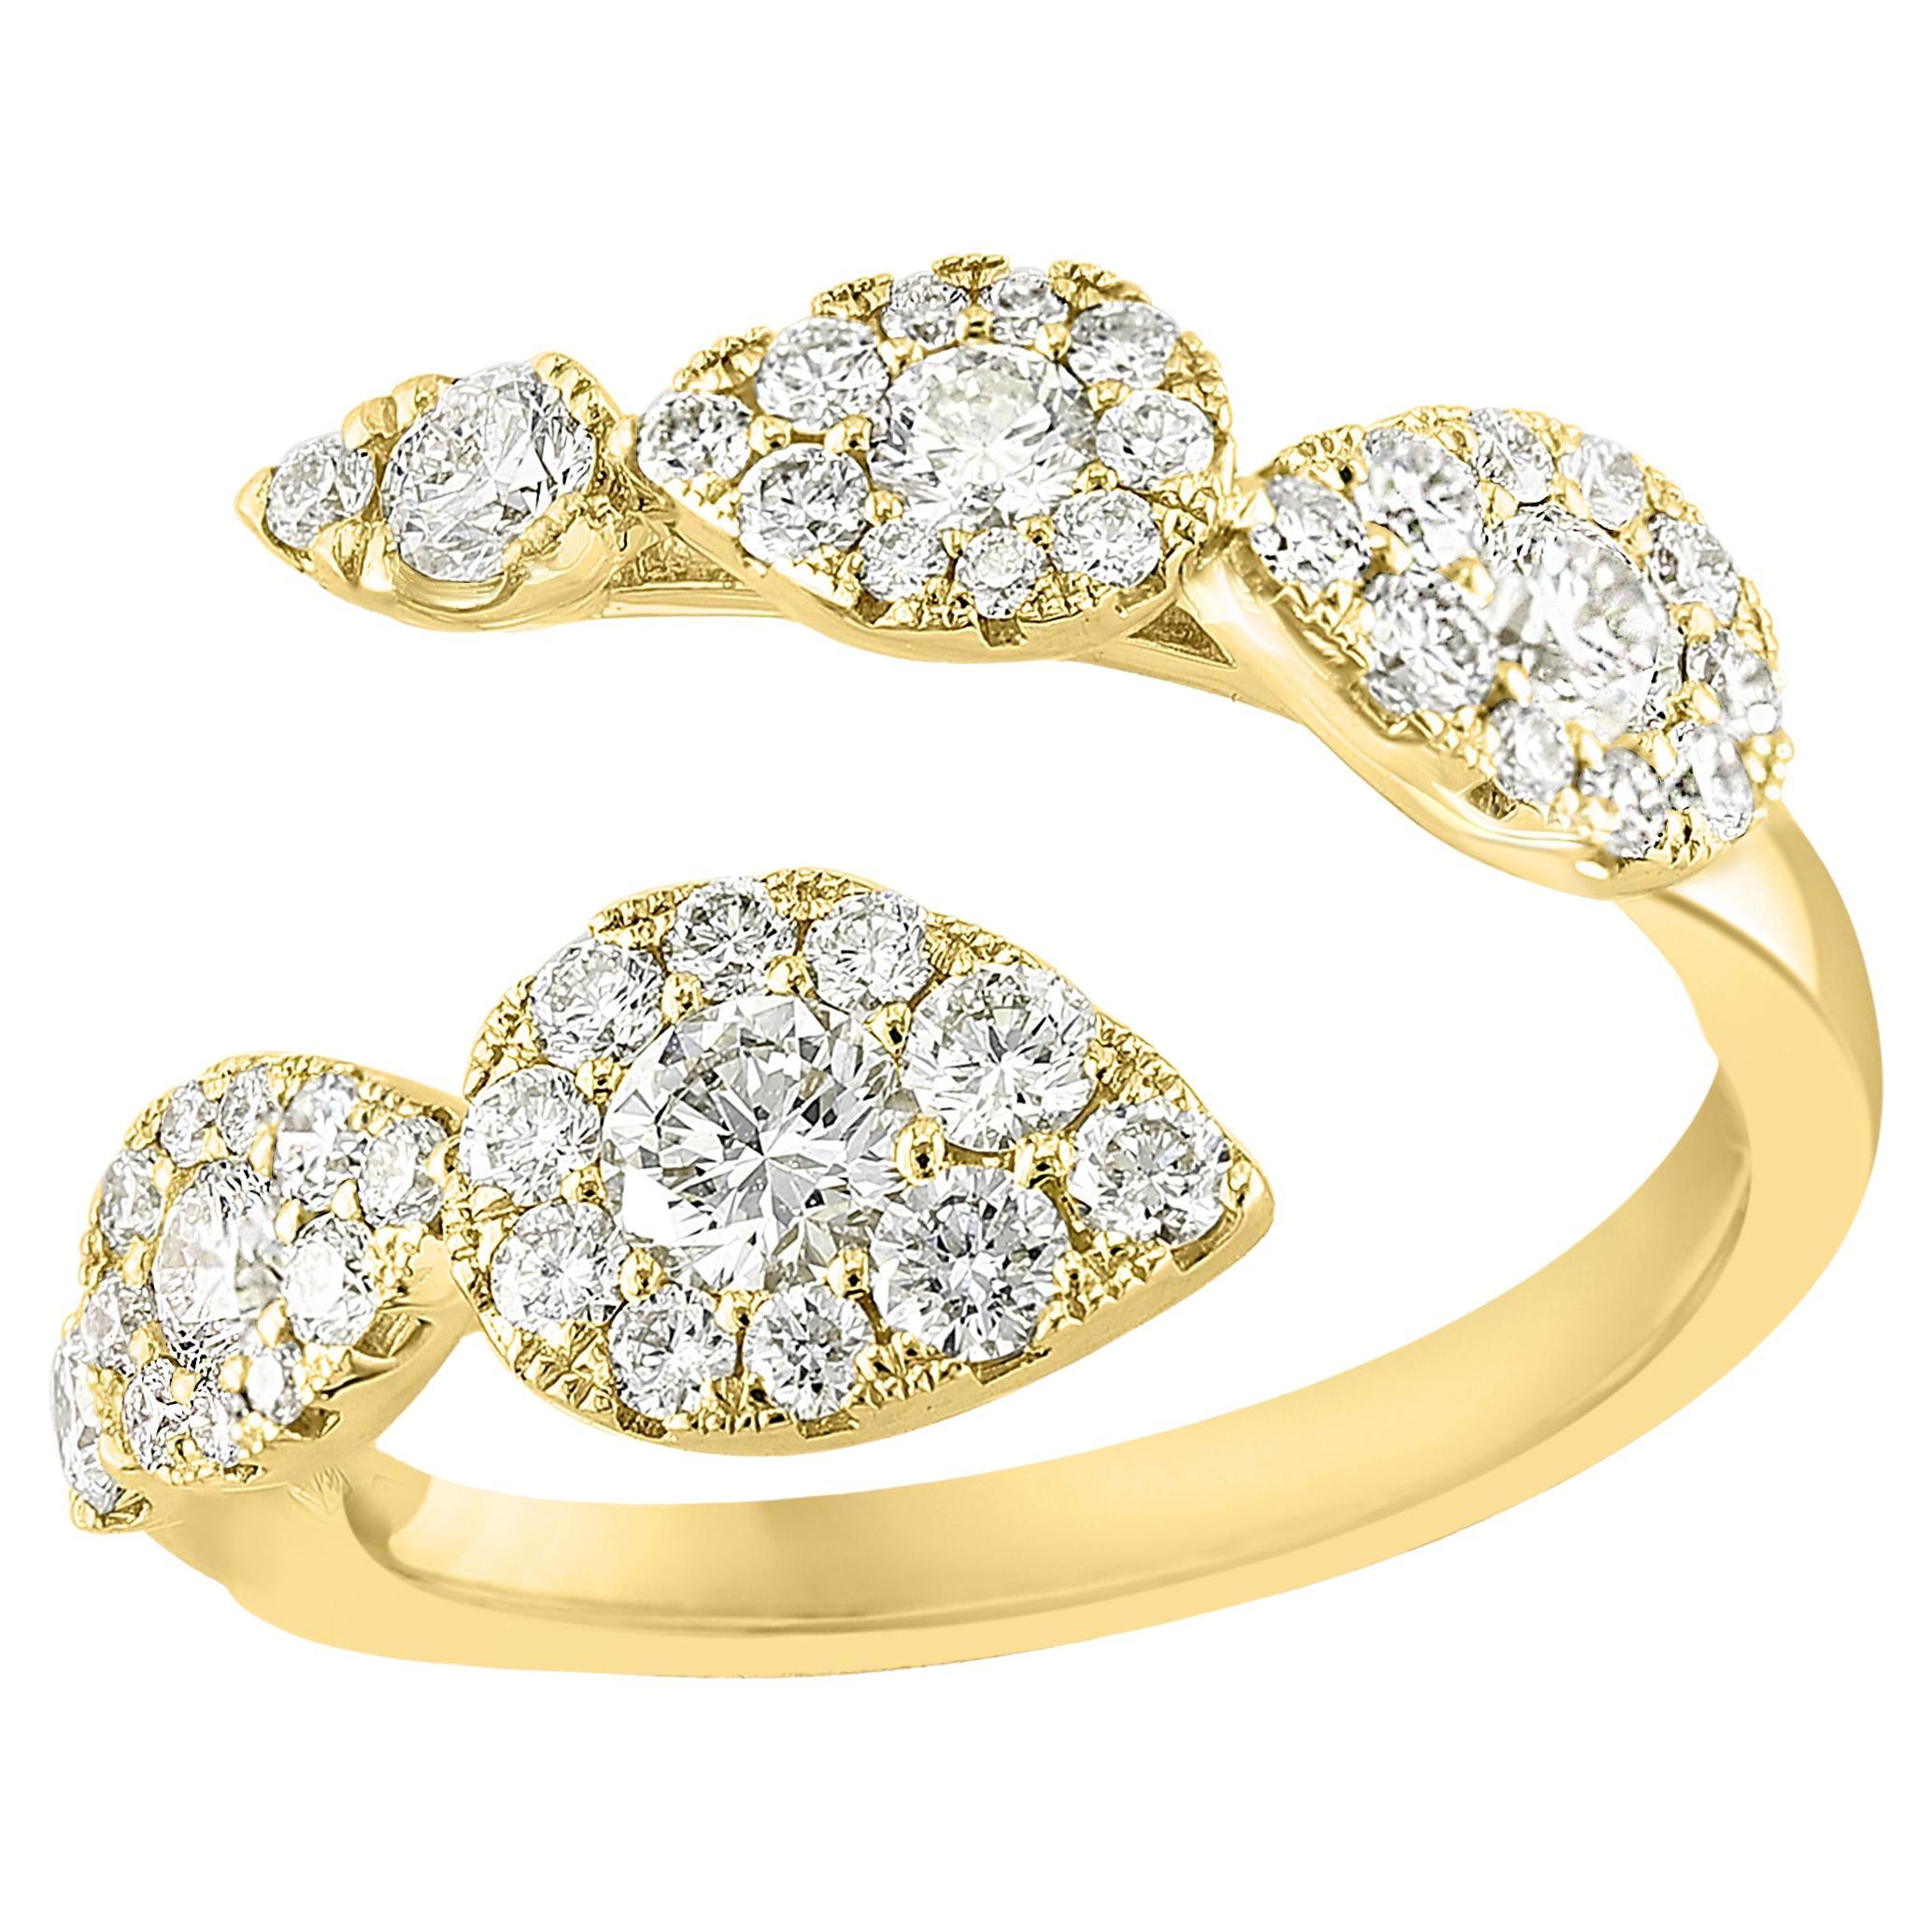 Bague Toi et Moi en or jaune 18 carats avec diamants taille brillant de 1,15 carat